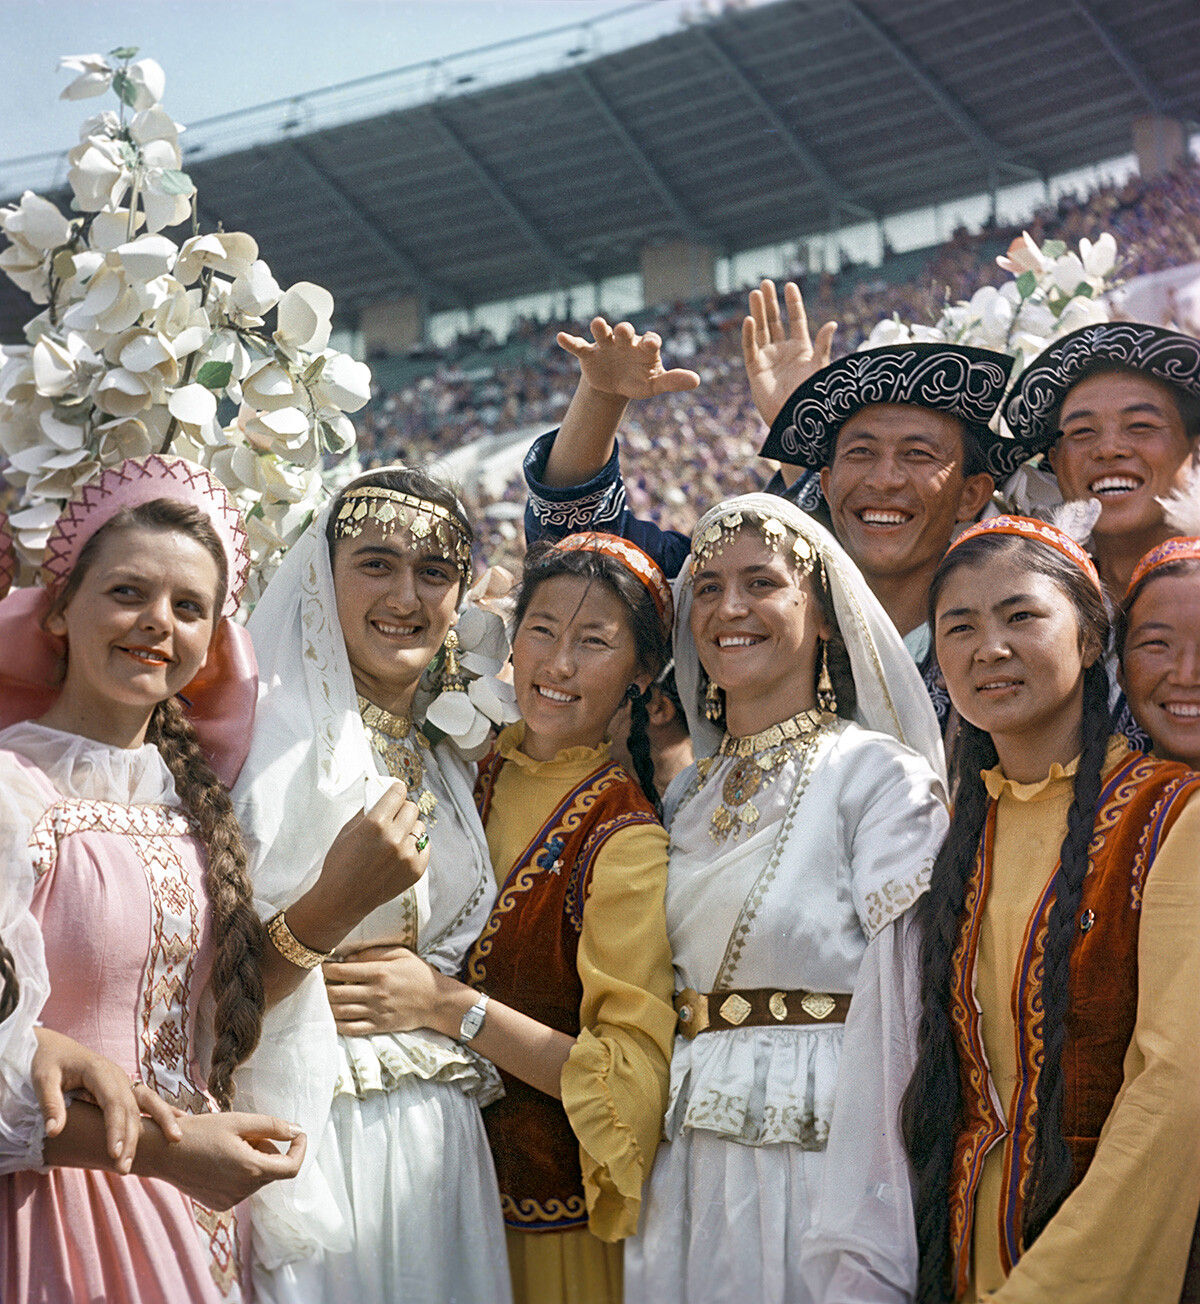 Udeleženci VI. svetovnega festivala mladine in študentov, ki je potekal v Moskvi od 28. julija do 11. avgusta 1957 pod sloganom 